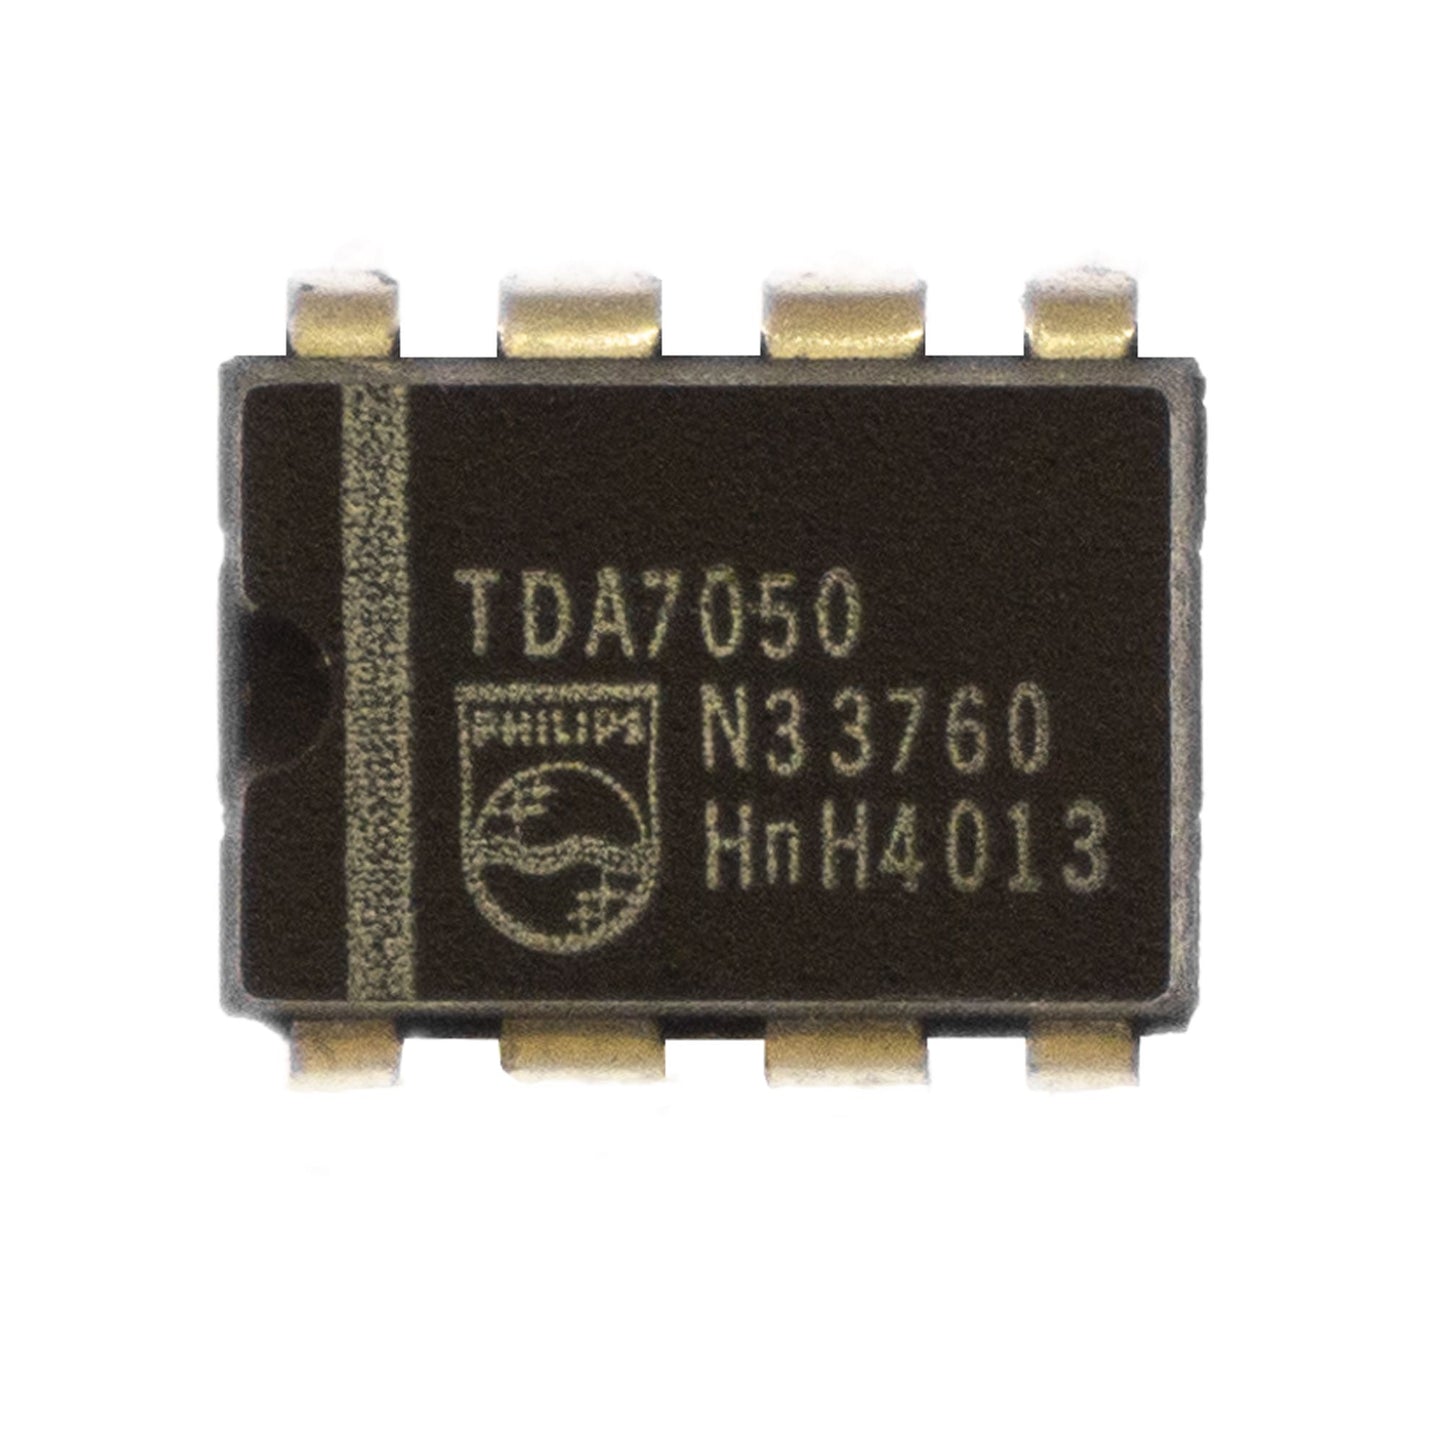 Philips TDA7050 circuito integrato, transistor, componente elettronico, 8 contatti